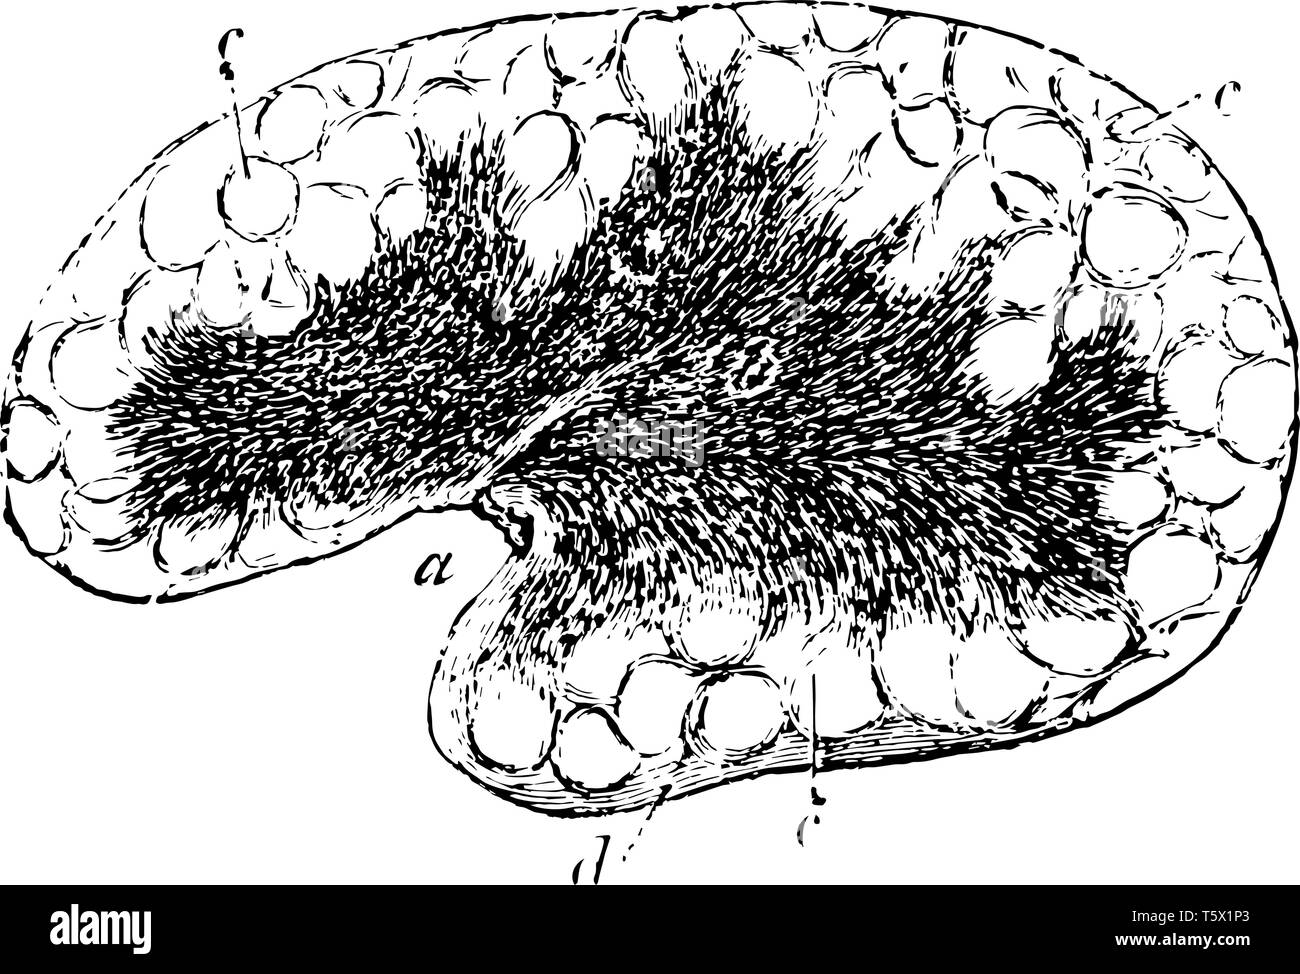 Premistoppa mesenterica sostanza corticale con alveoli indistinto vintage disegno della linea di incisione o illustrazione. Illustrazione Vettoriale